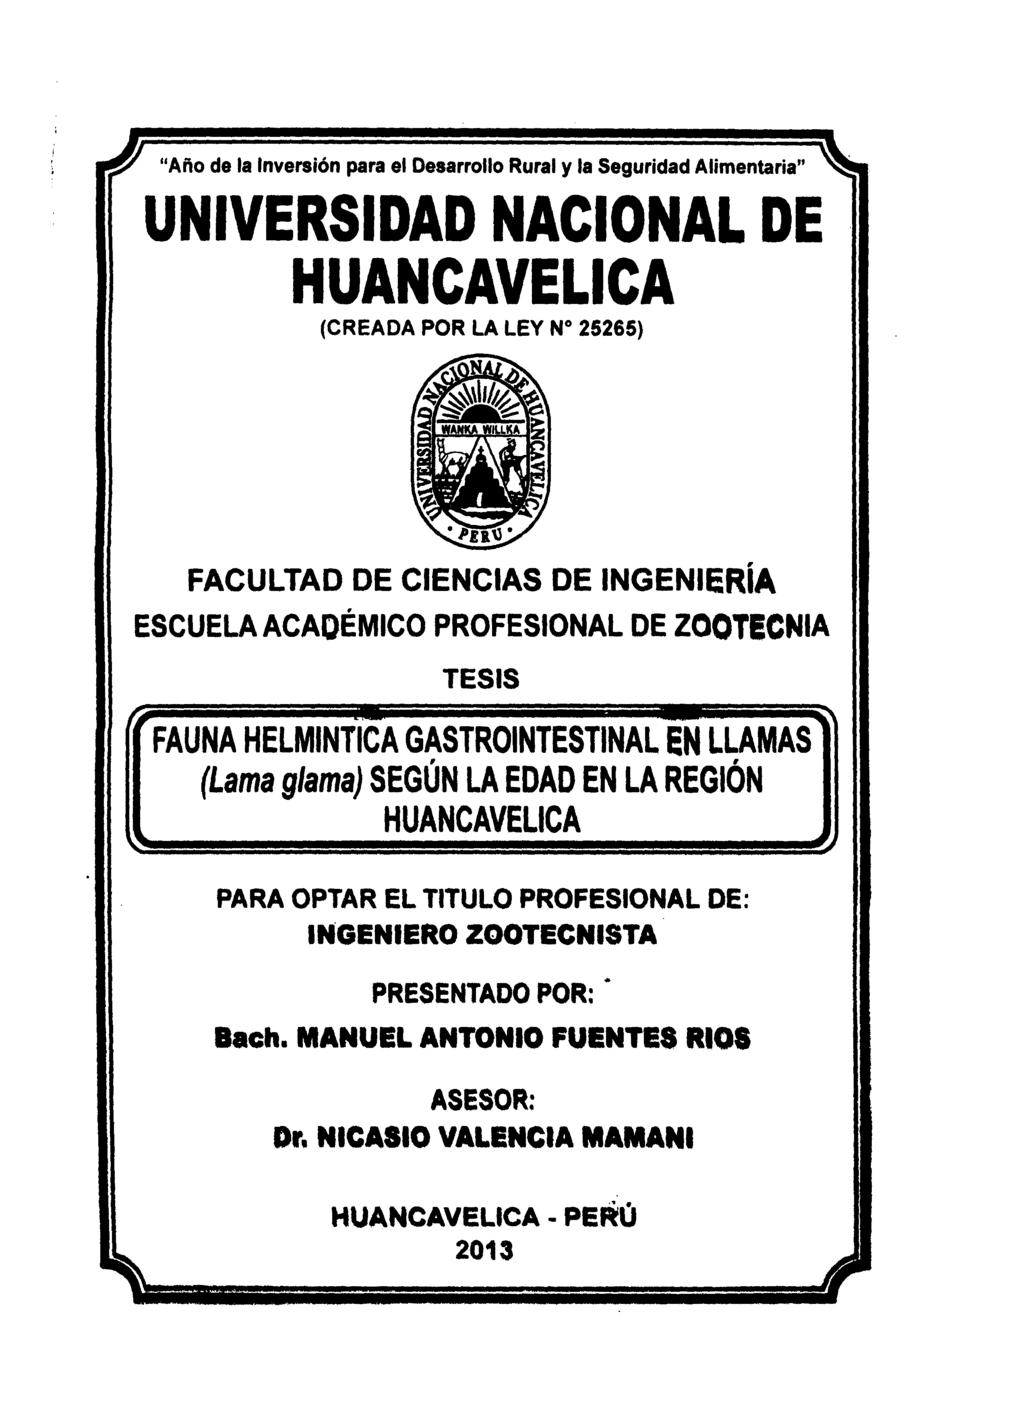 Universidad Nacional De Huancavelica Creada Por La Ley No 25265